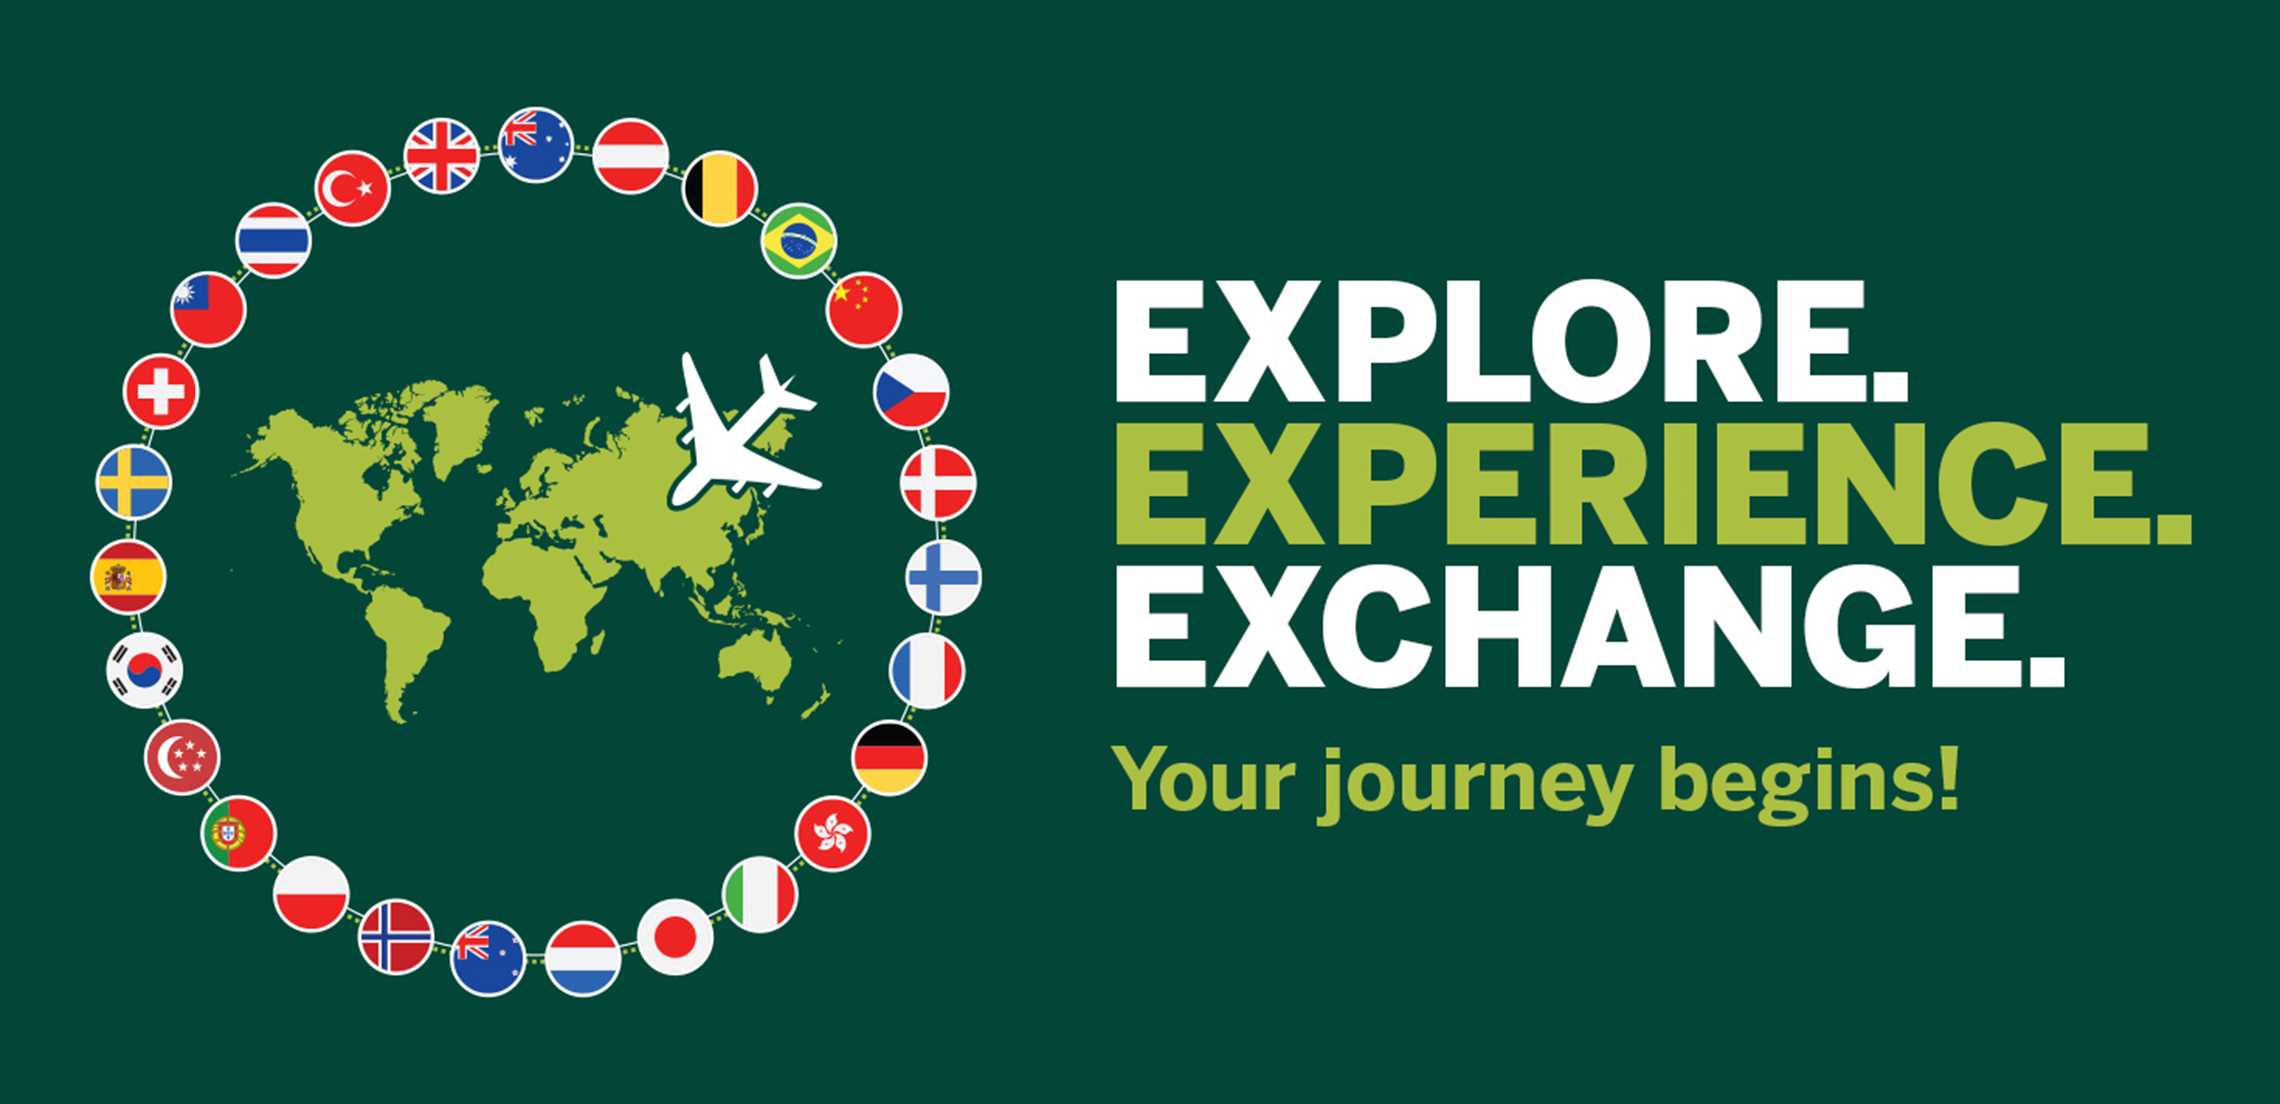 Explore. Experience. Exchange.